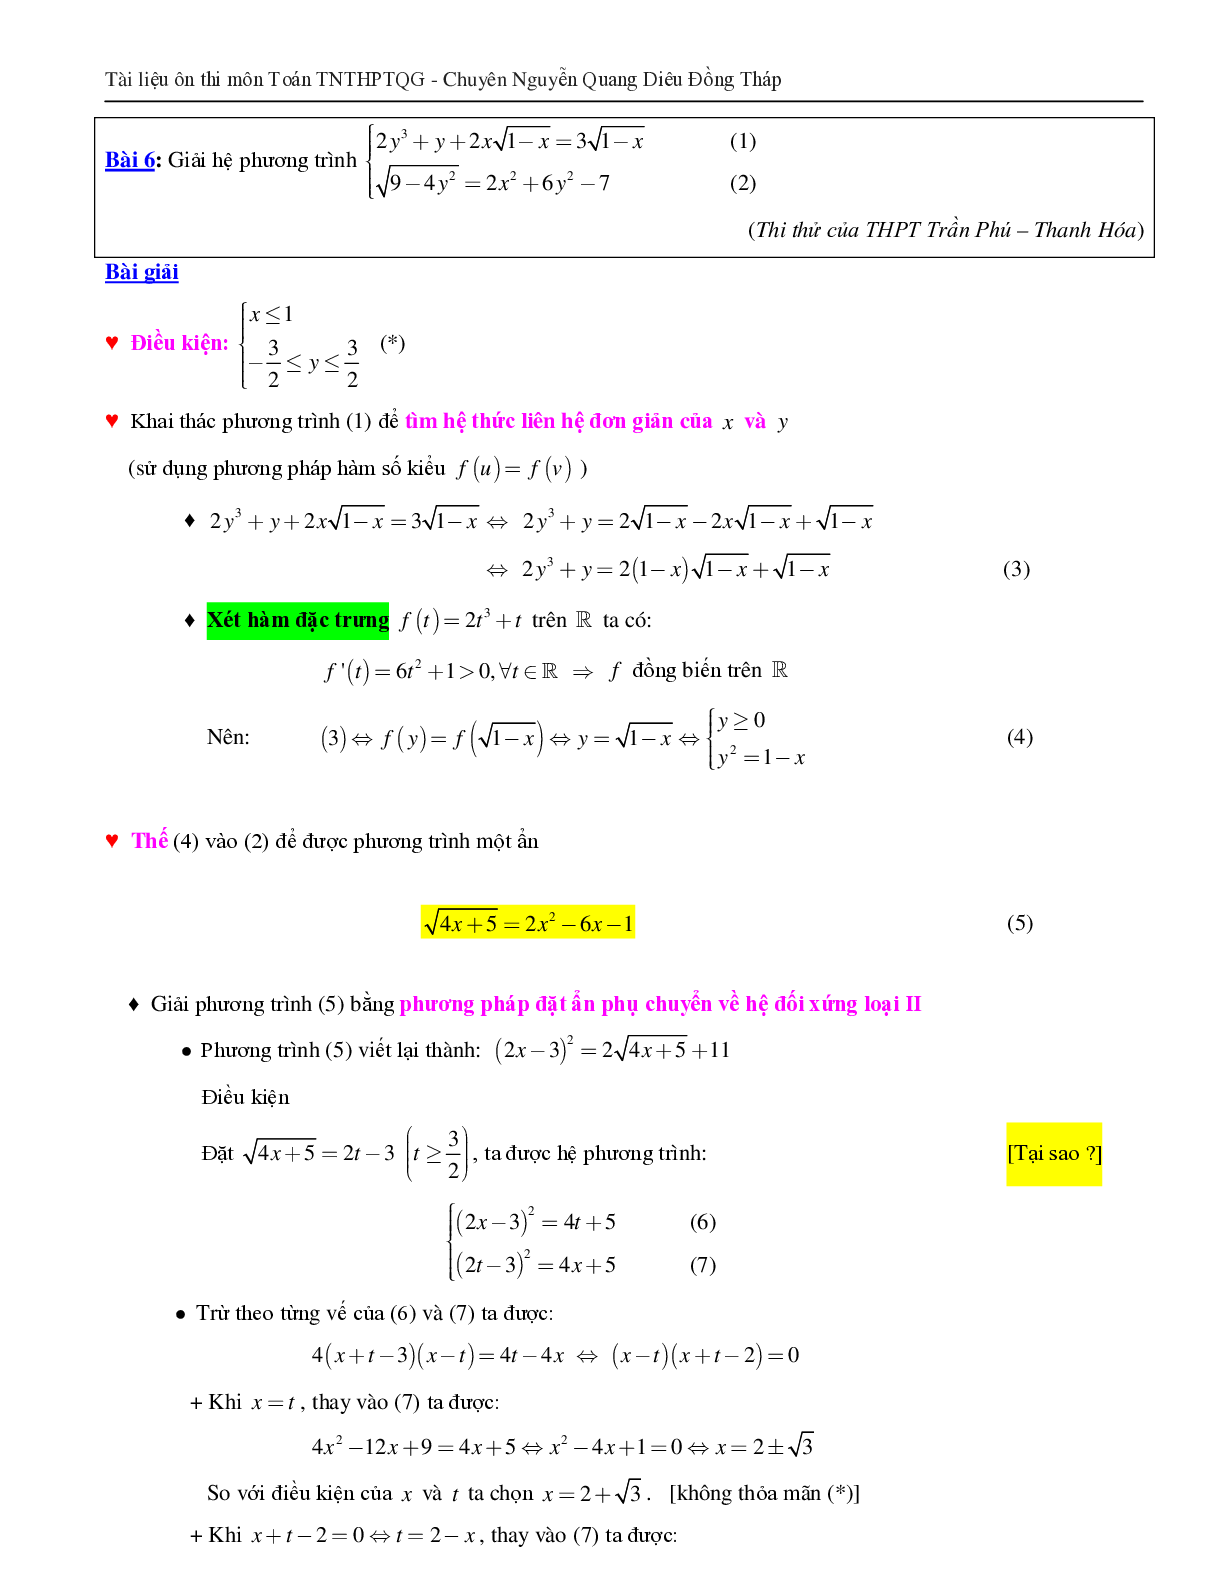 Giải hệ phương trình bằng phương pháp hàm số (trang 8)